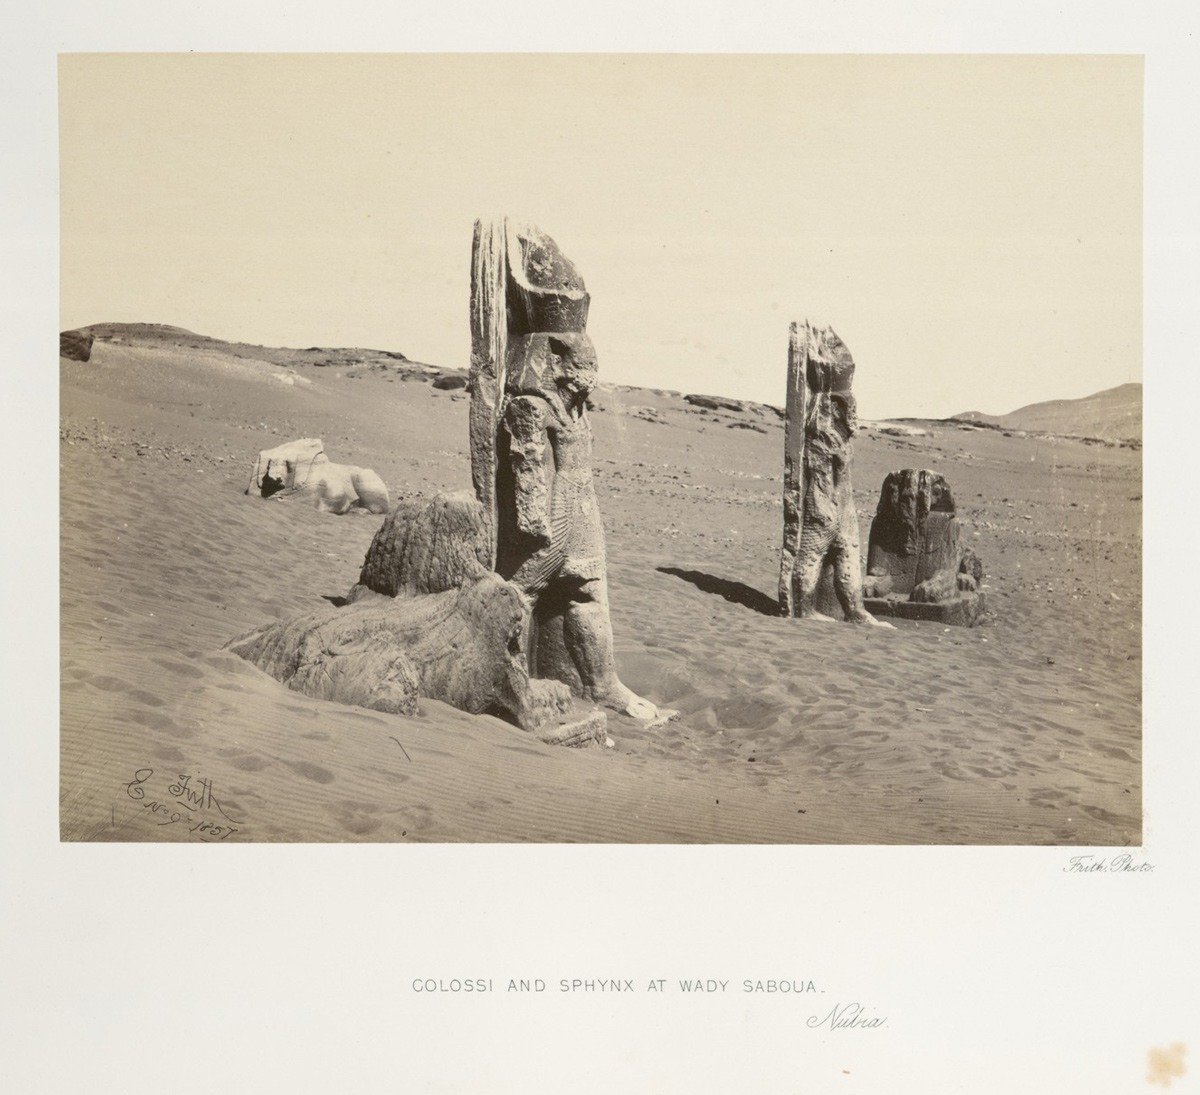 تماثيل ممنون العملاقة وأبو الهول في النوبة في جنوب مصر، سنة 1857.